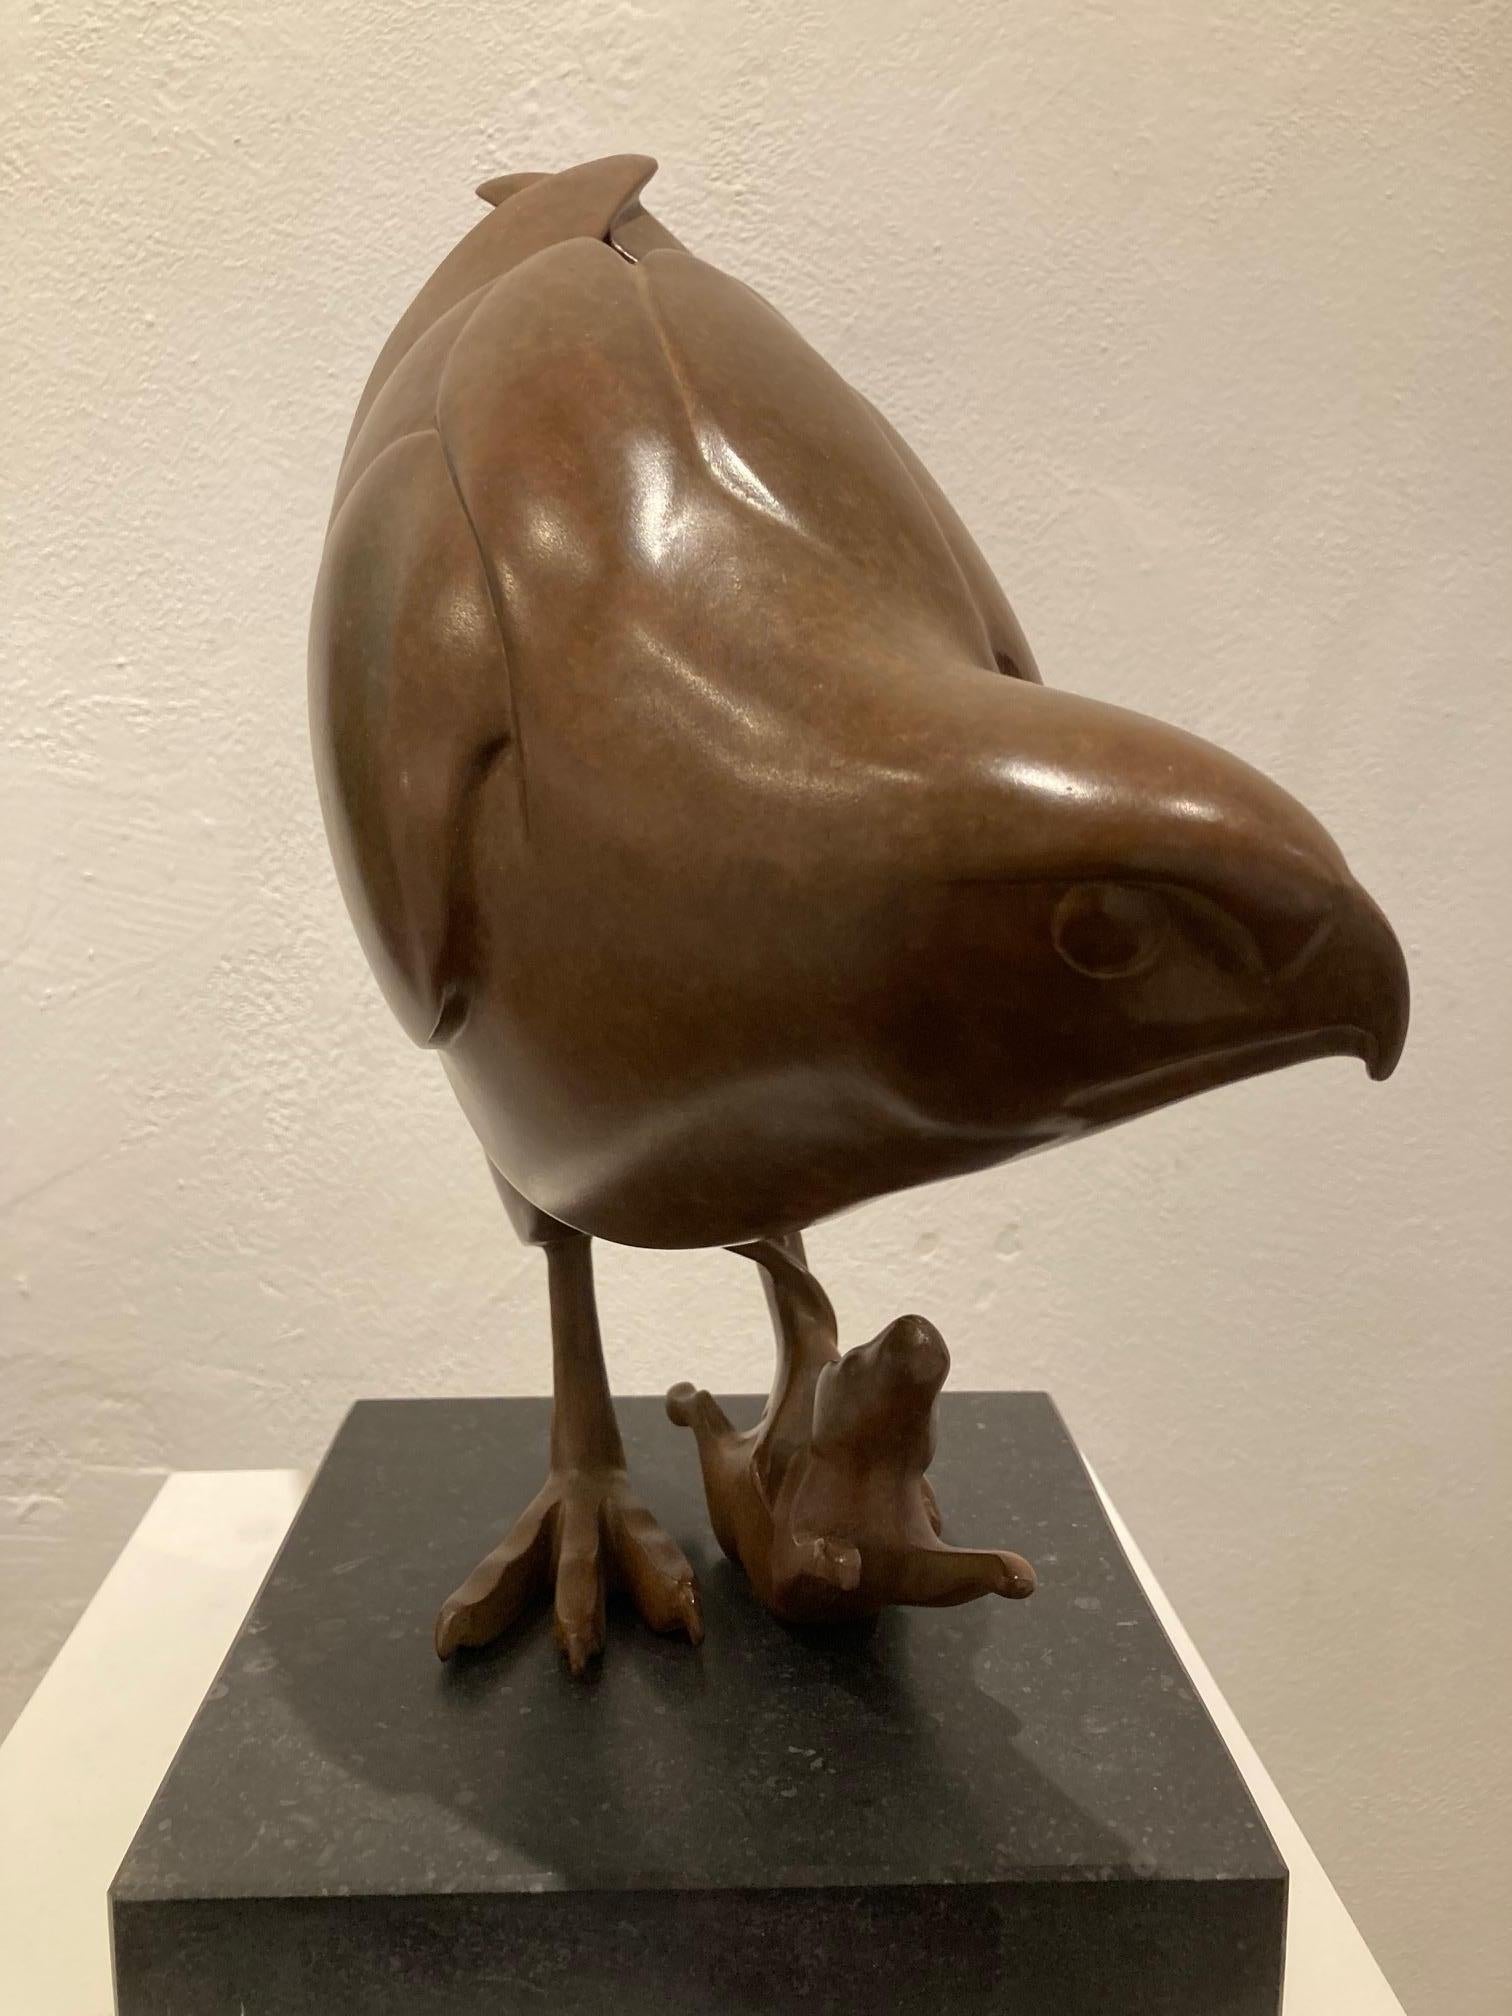 Roofvogel met Muis Prey Bird with Mouse Bronze Sculpture Animal Bird In Stock  - Gold Figurative Sculpture by Evert den Hartog